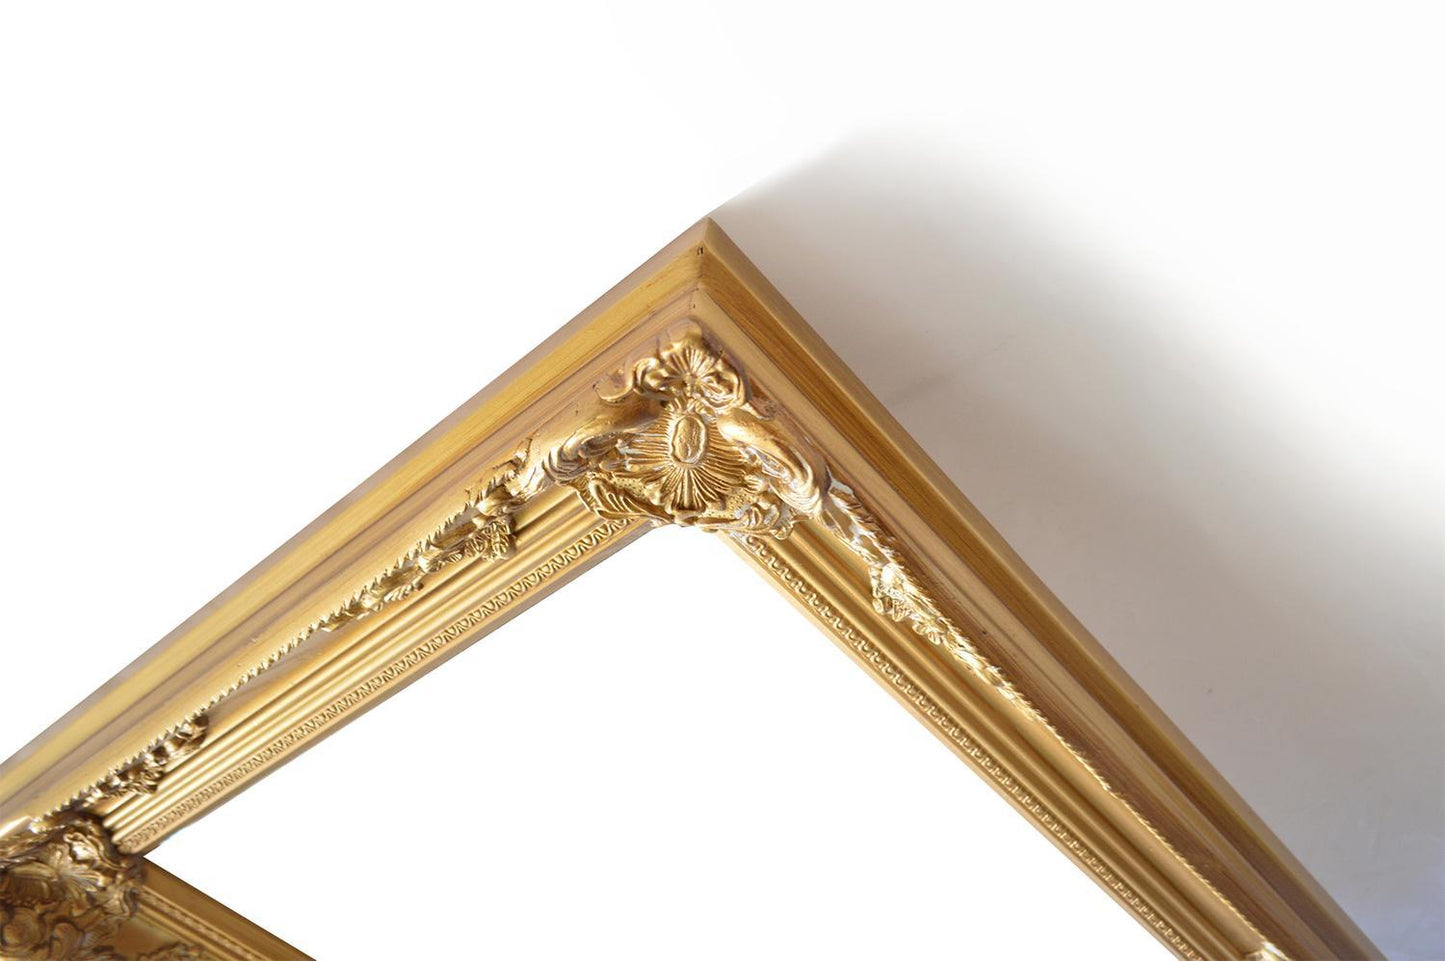 24x36 ins Wooden frame in golden color